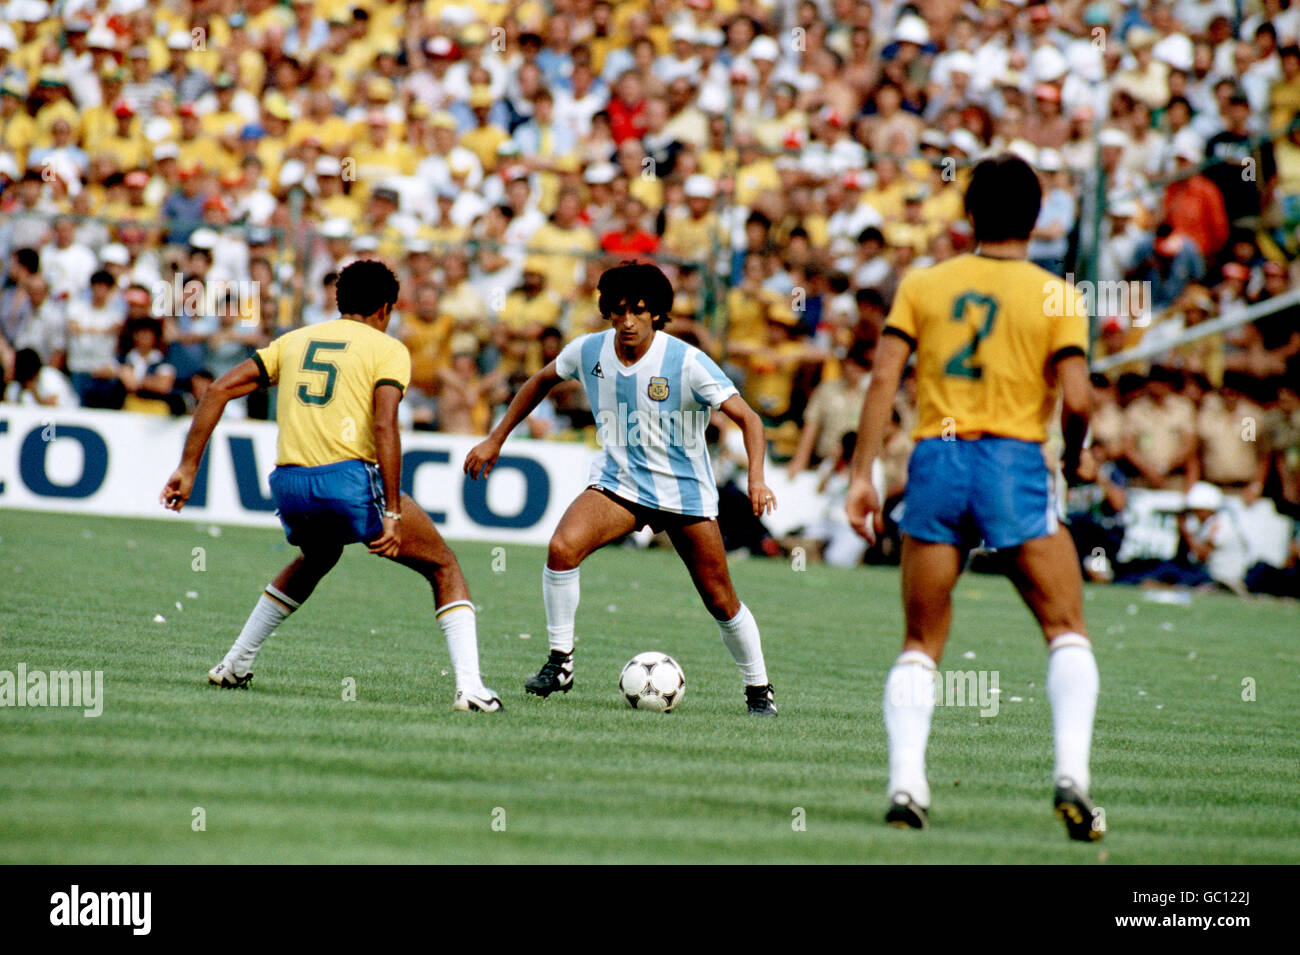 Soccer - World Cup Spain 82 - Group C - Brazil v Argentina. Argentina's Ramon Diaz (c) takes on Brazil's Toninho Cerezo (l) Stock Photo